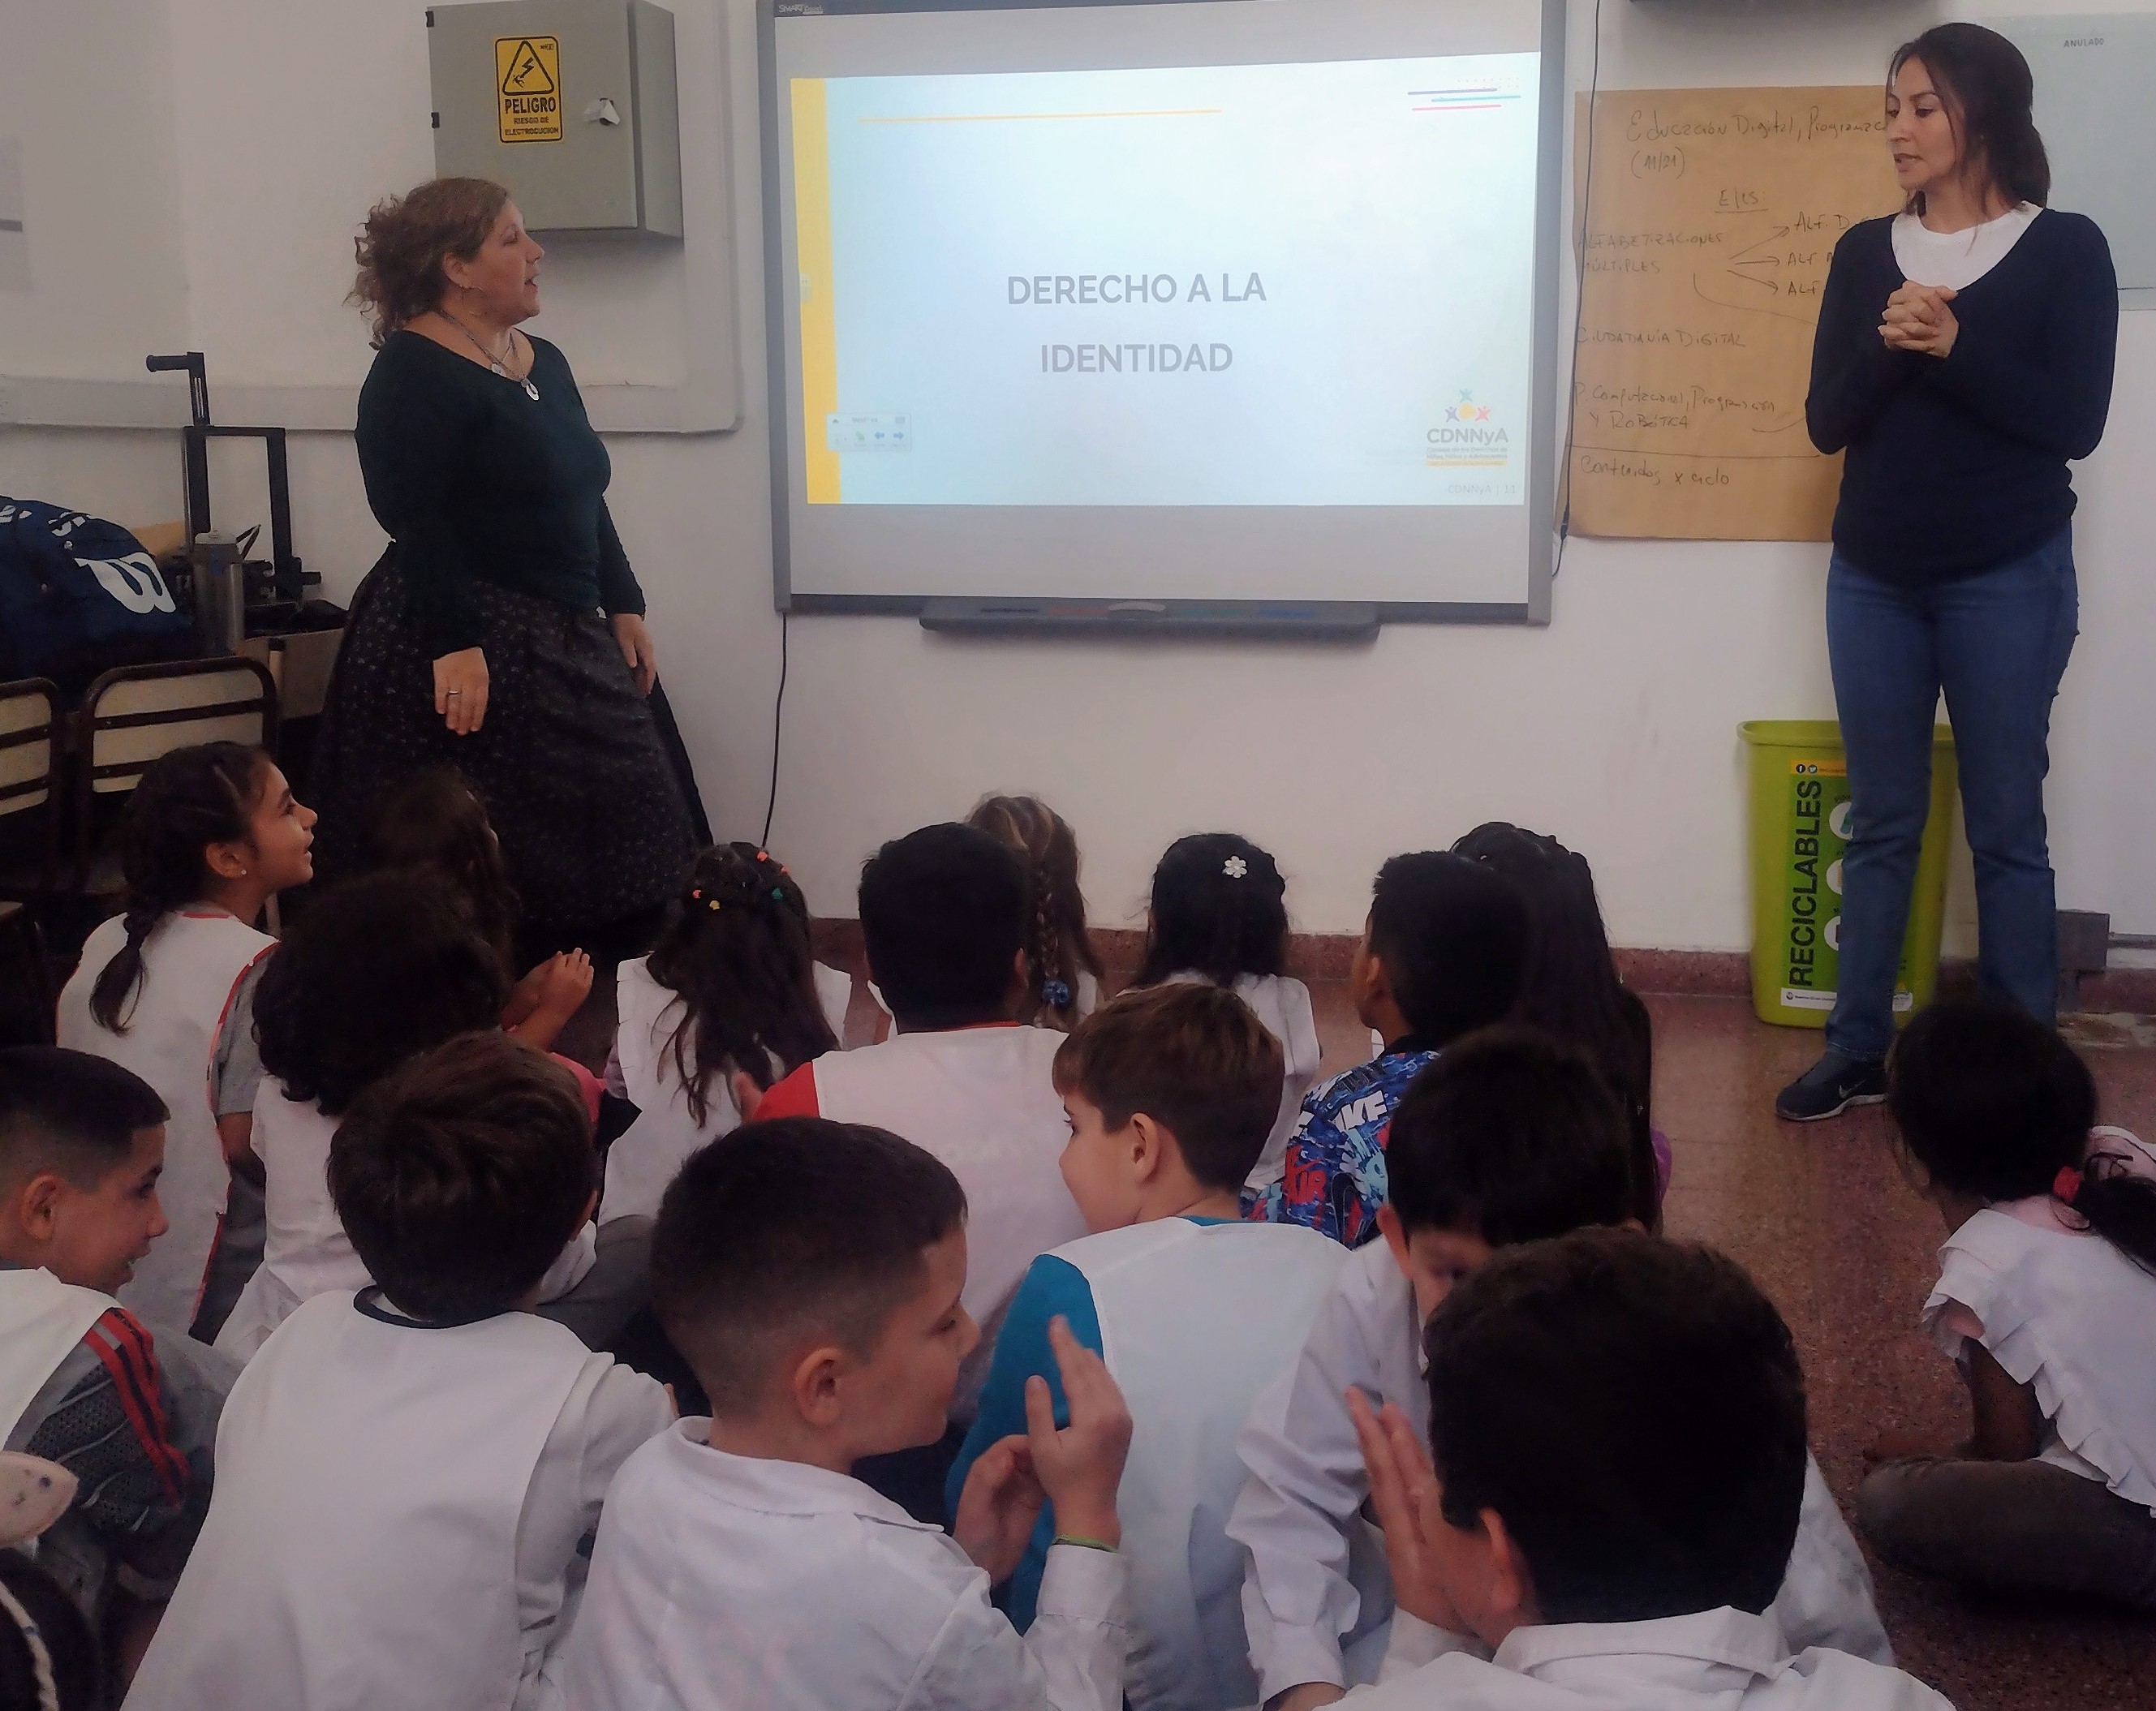 Programa "Conociendo Nuestros Derechos": Talleres en Escuelas de la Ciudad de Buenos Aires